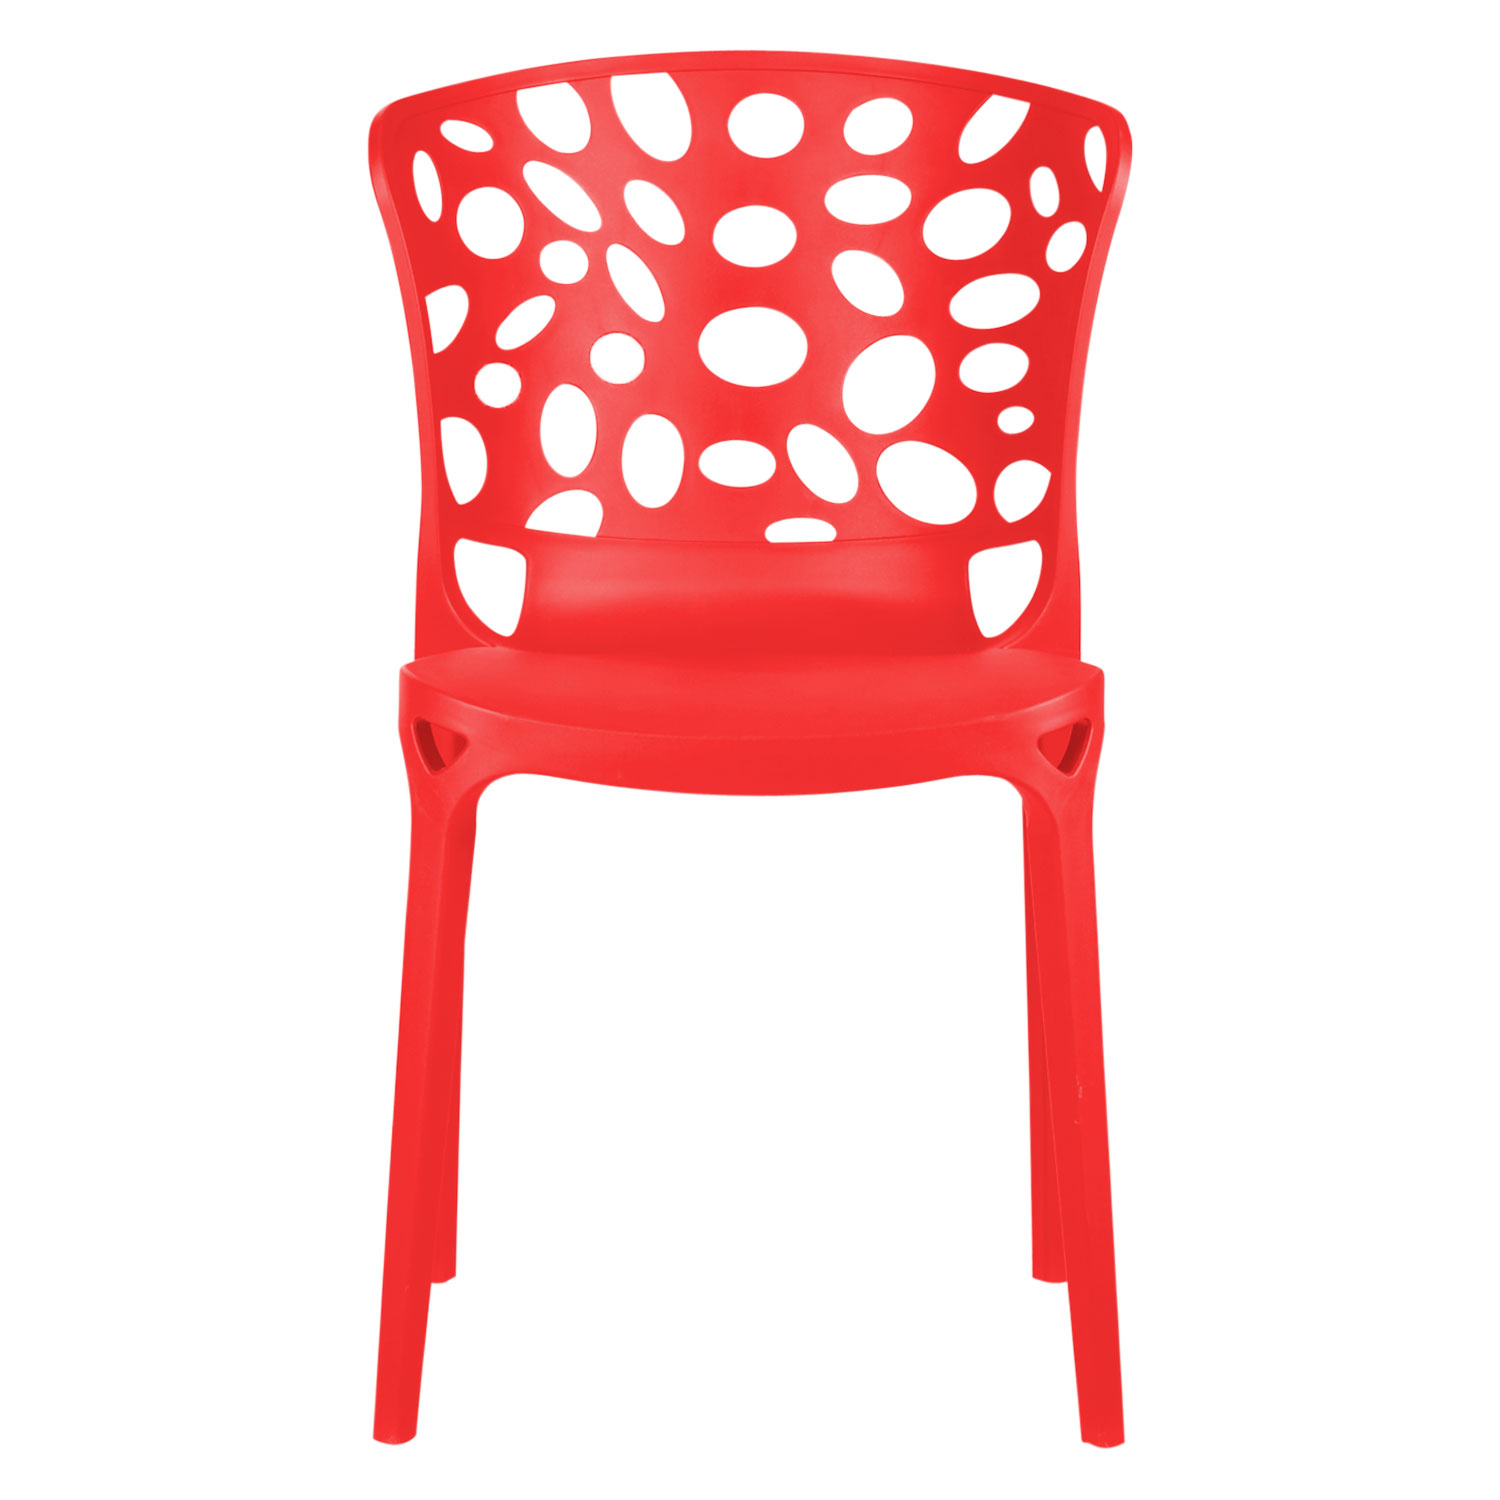 Chaise de jardin Lot de 4 Moderne Rouge Chaises design Plastique Chaises exterieur Chaises empilable Chaise de cuisine